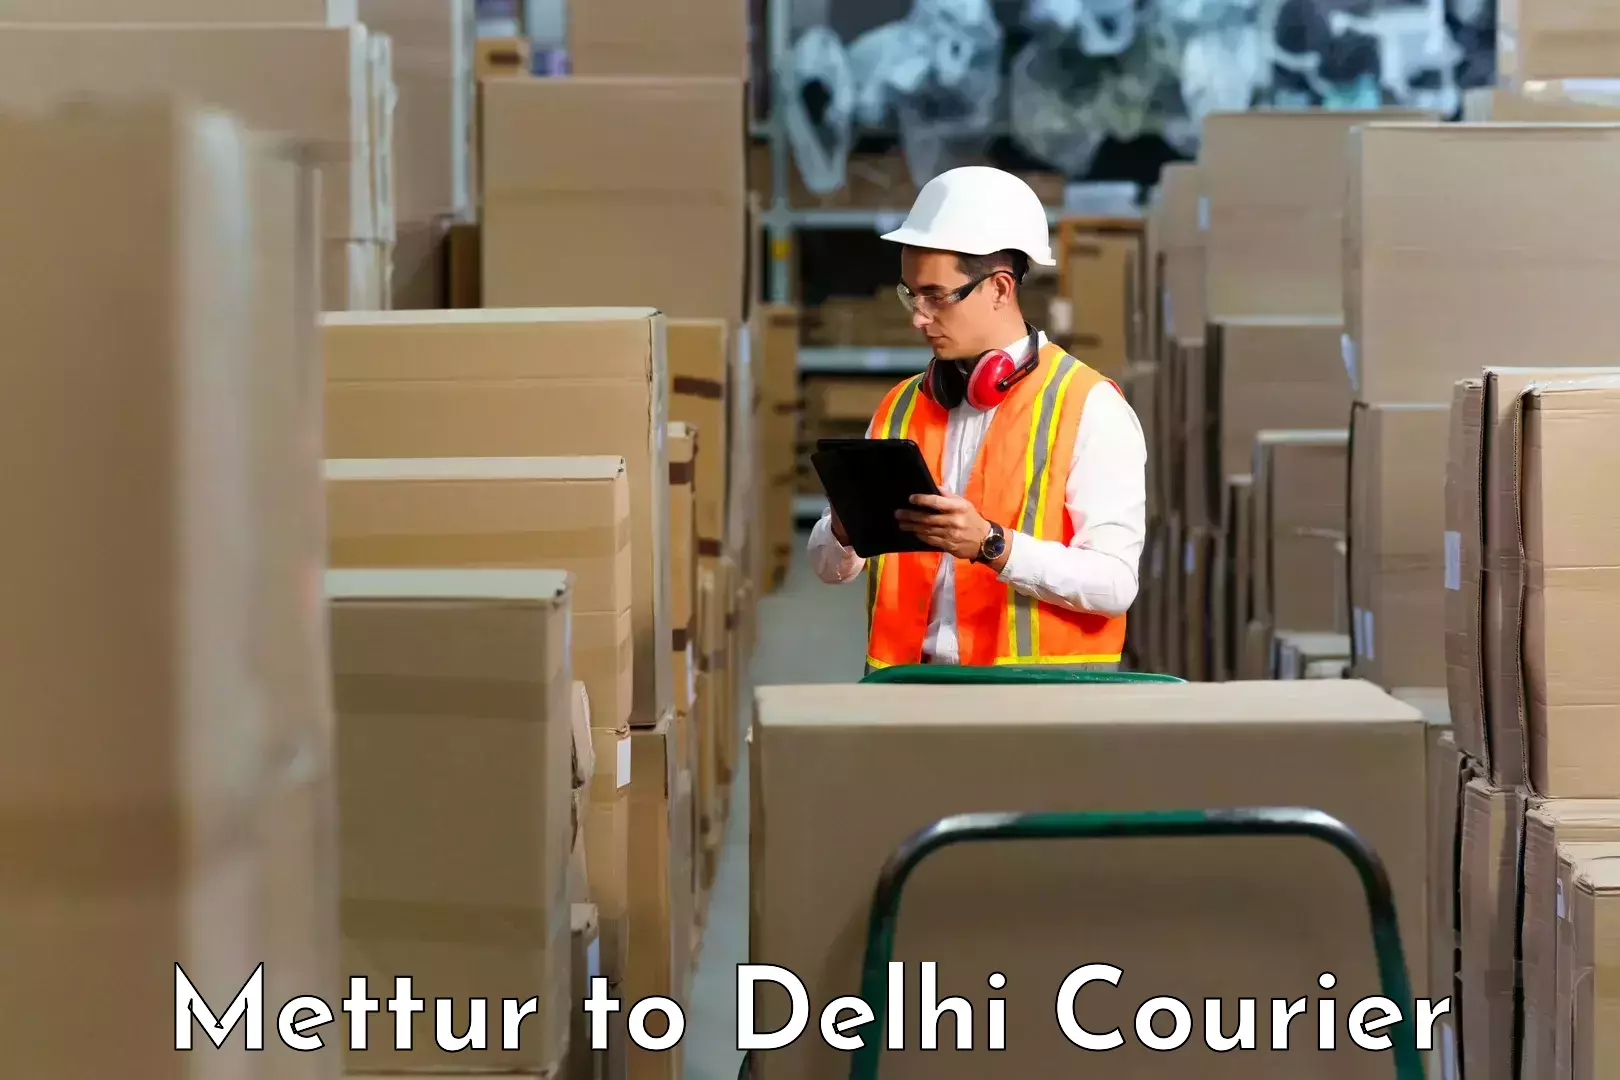 Next-generation courier services Mettur to Delhi